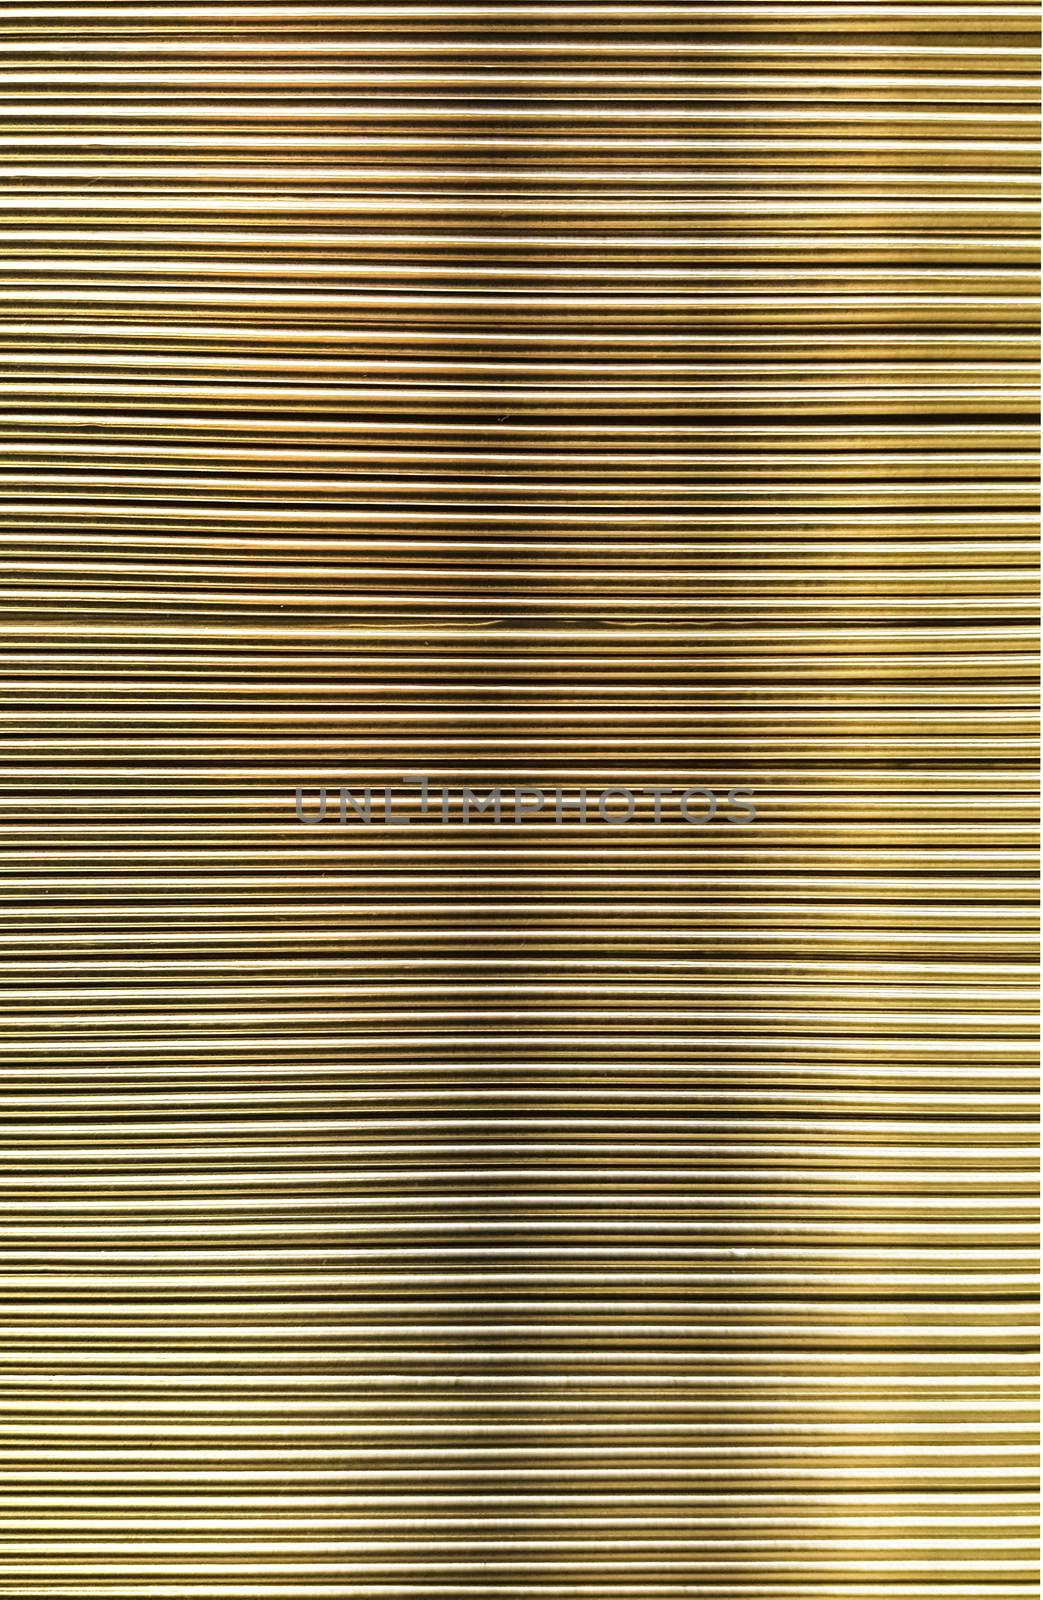 Metal corrugated sheet, texture, by zeffss